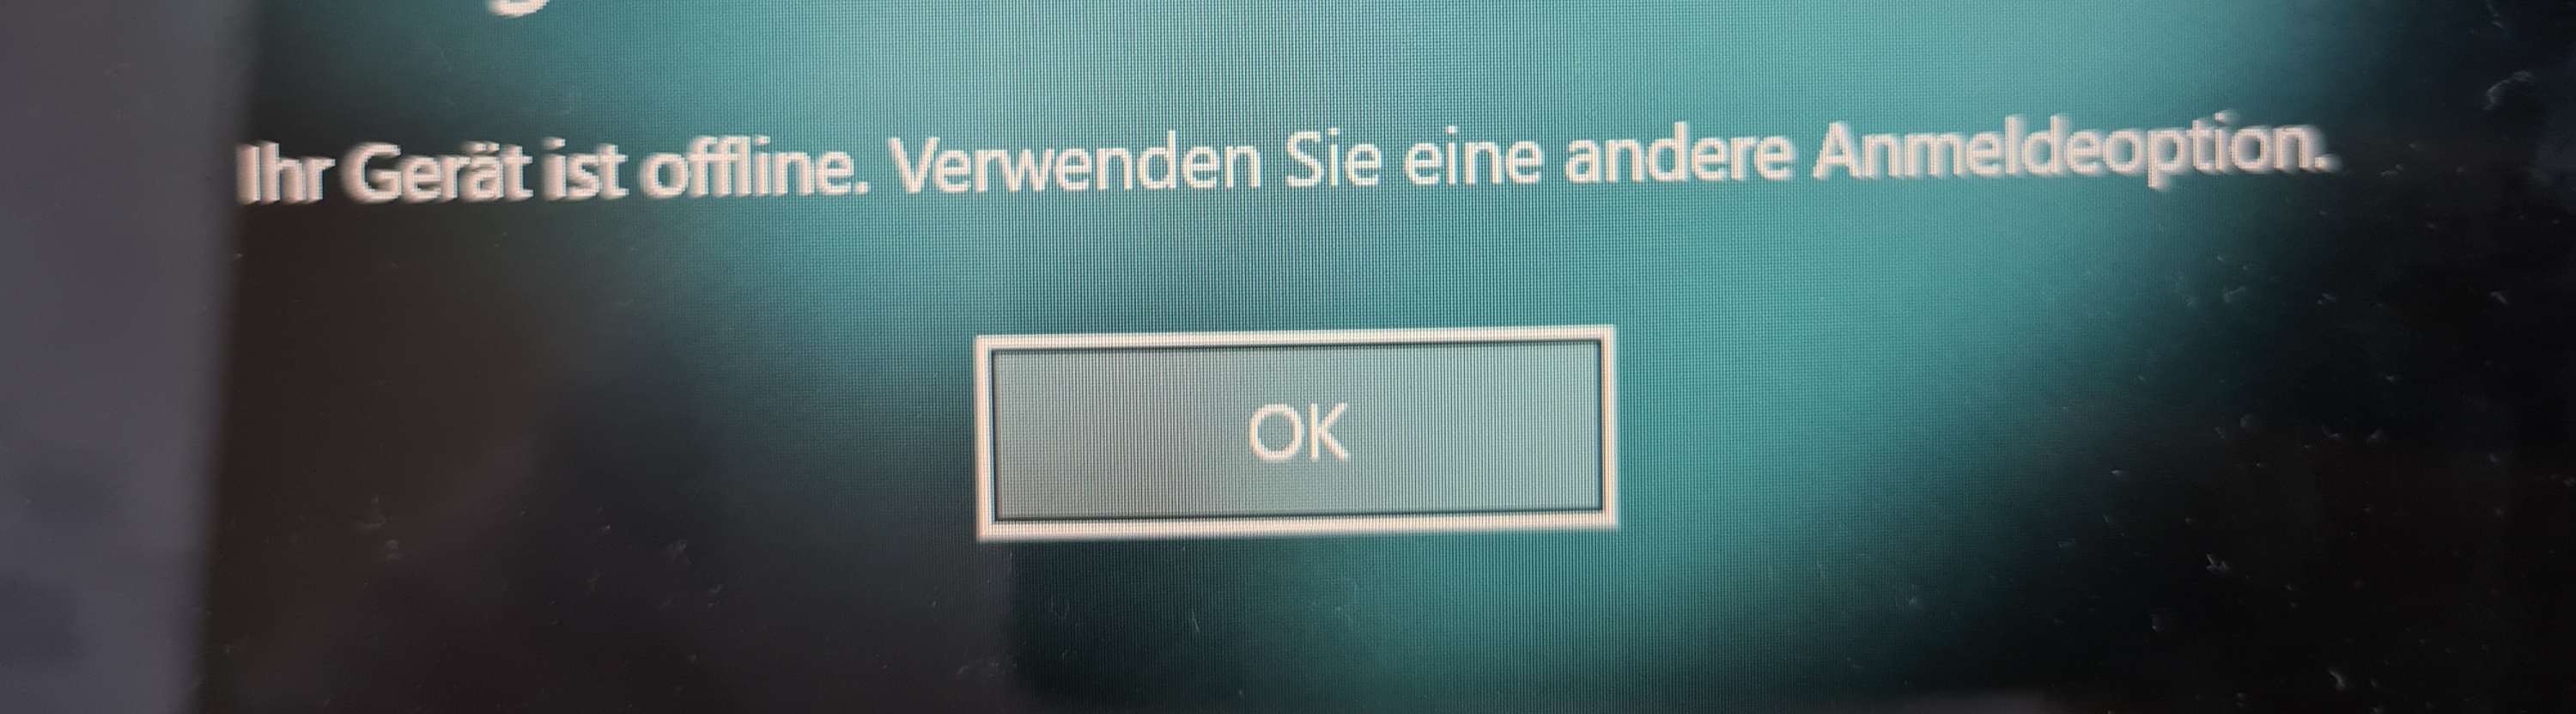 Windows 10 Anmeldung plötzlich nicht mehr möglich